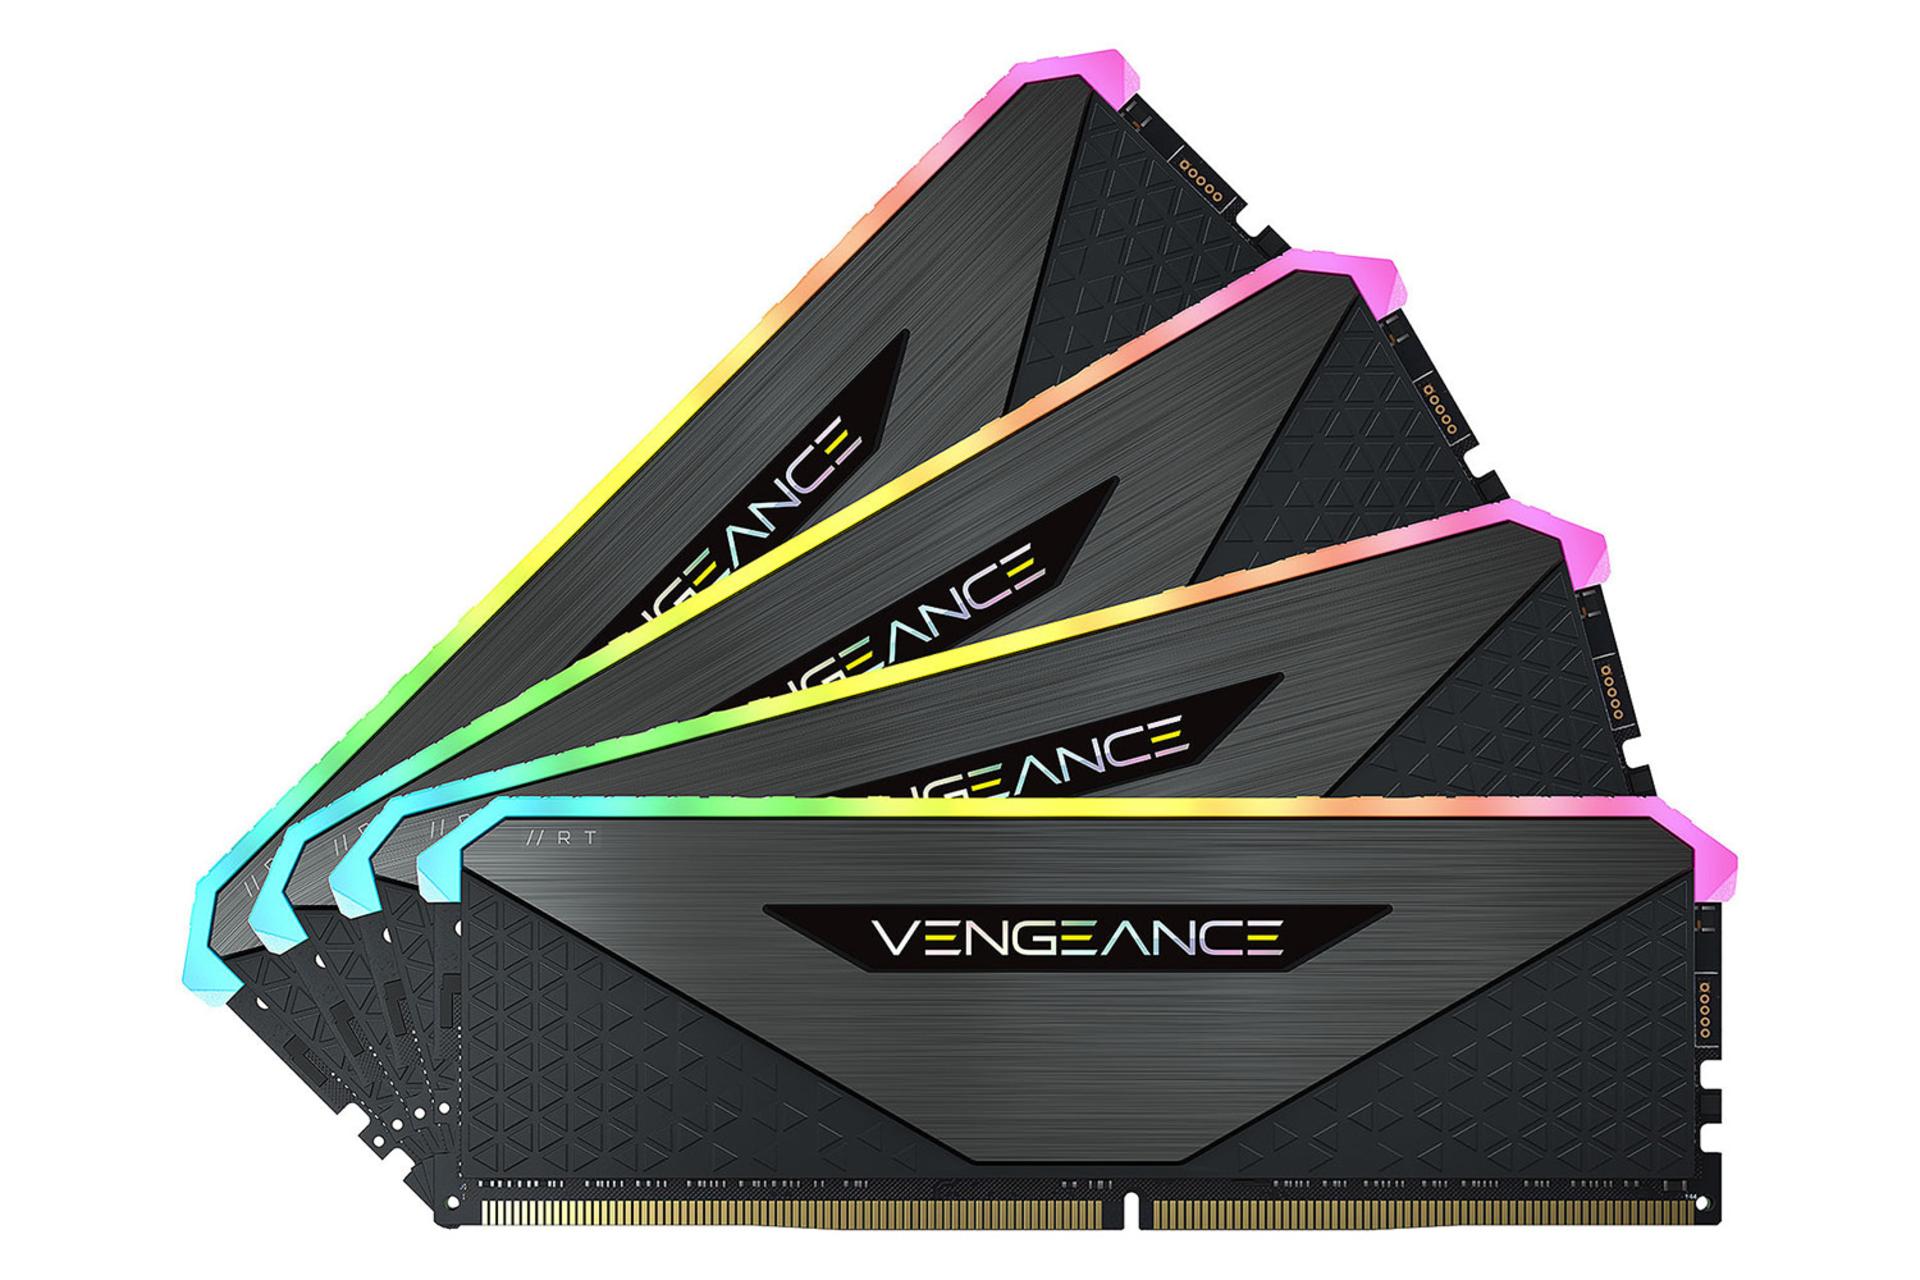 نمای روبروی رم کورسیر VENGEANCE RGB RT ظرفیت 64 گیگابایت (2x32) از نوع DDR4-3600 بصورت چهارتایی